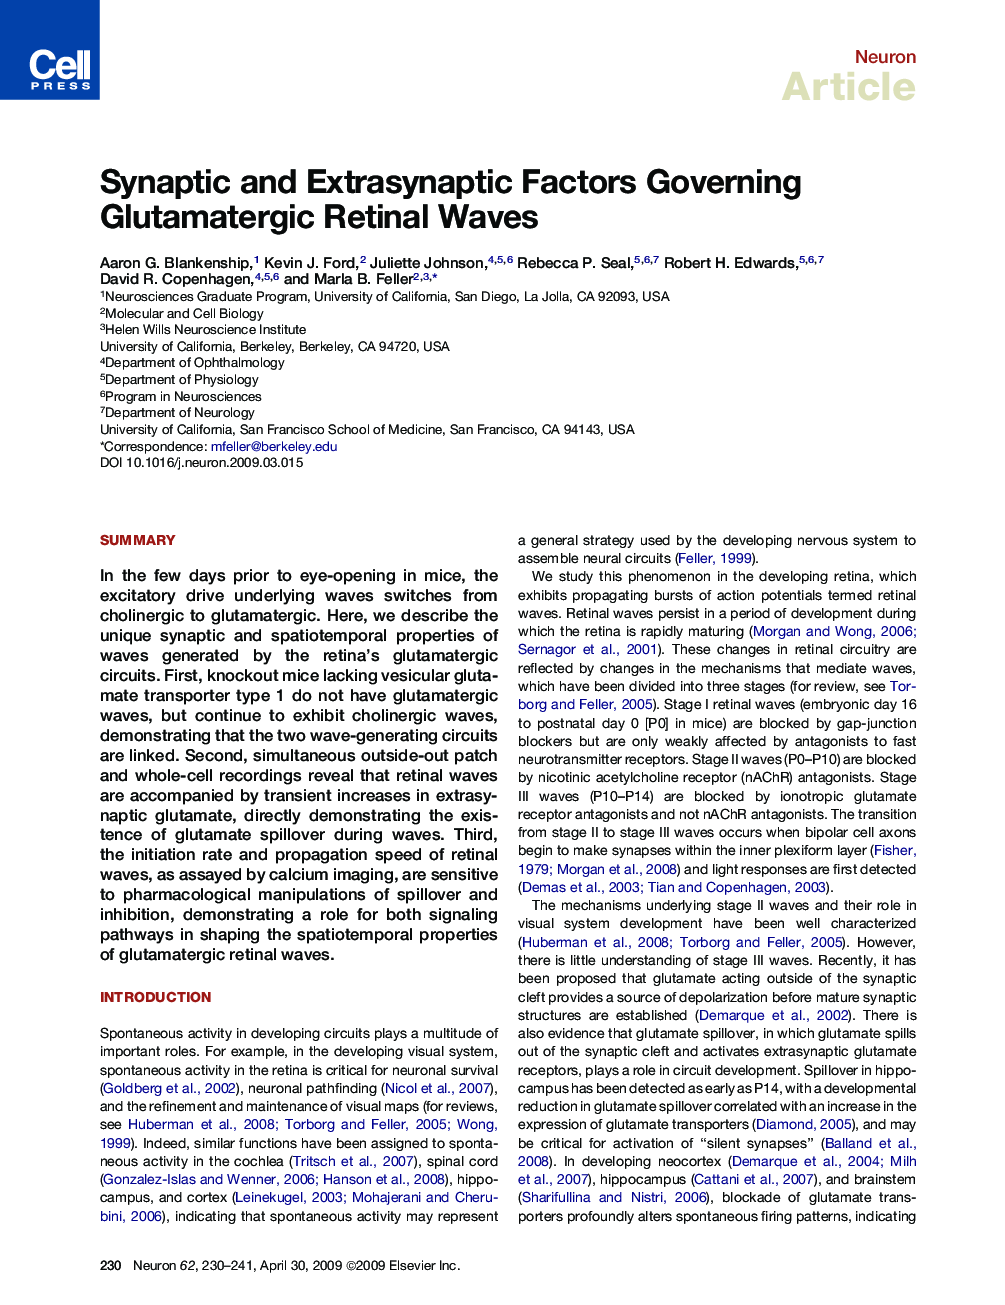 Synaptic and Extrasynaptic Factors Governing Glutamatergic Retinal Waves